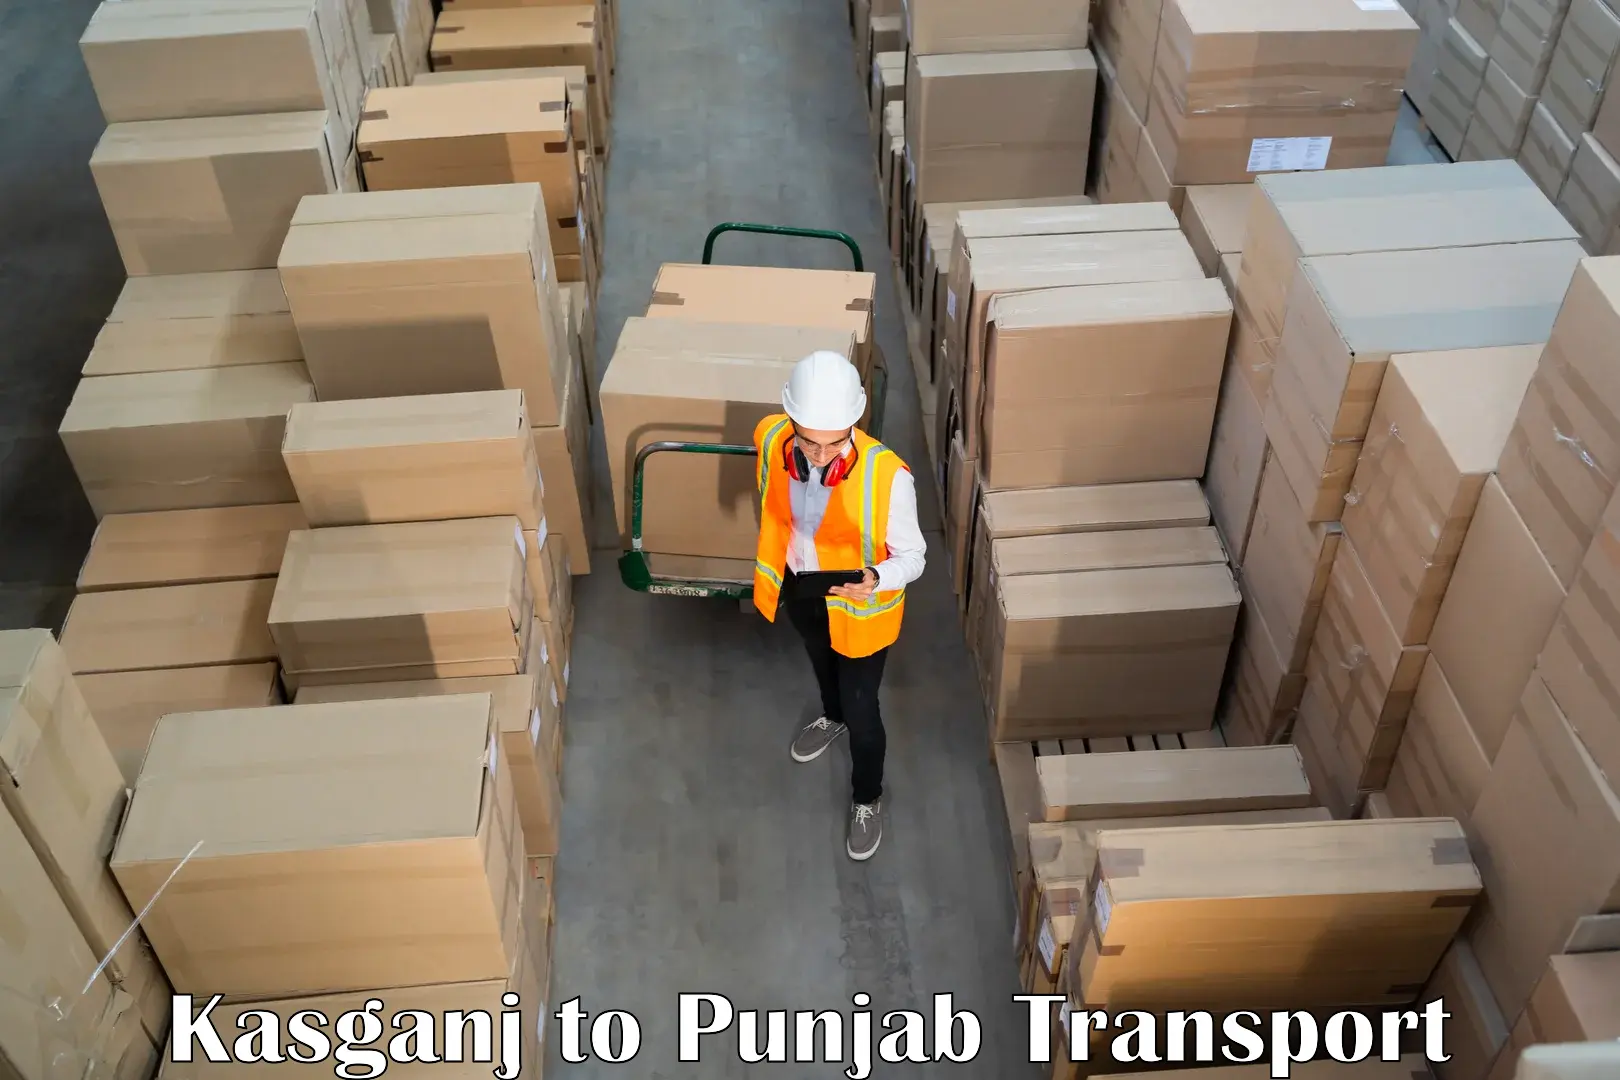 Parcel transport services Kasganj to Bathinda